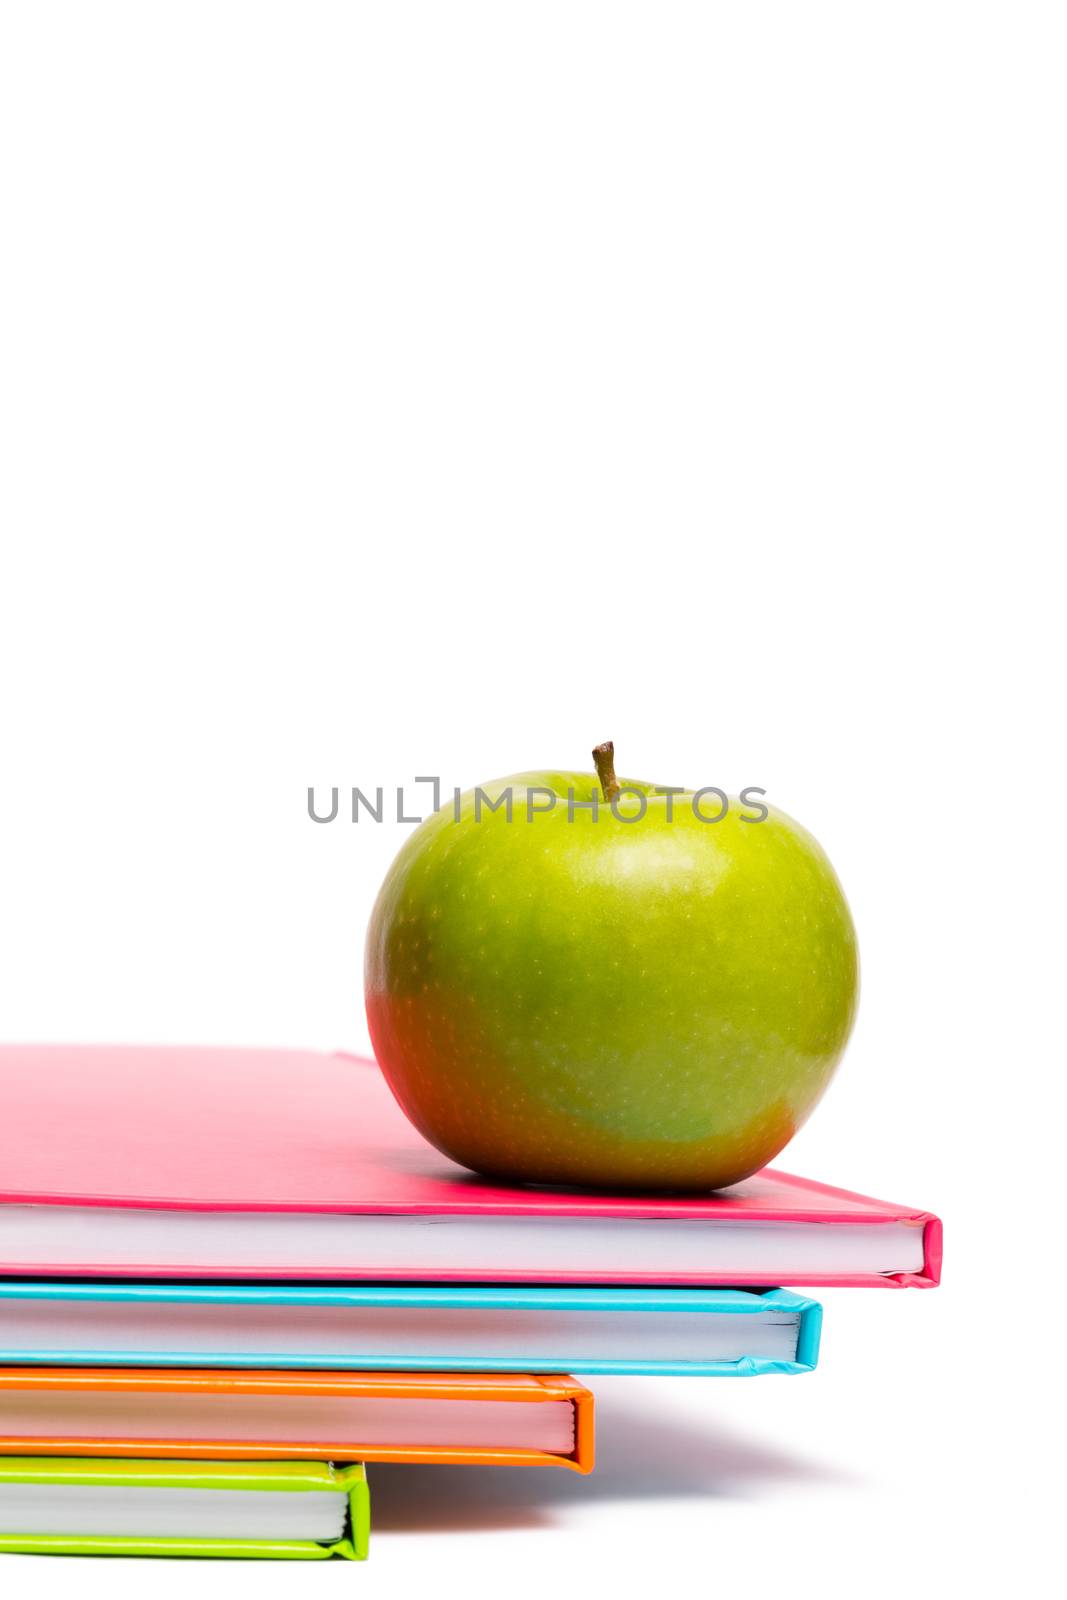 Green apple on notebooks by Wavebreakmedia